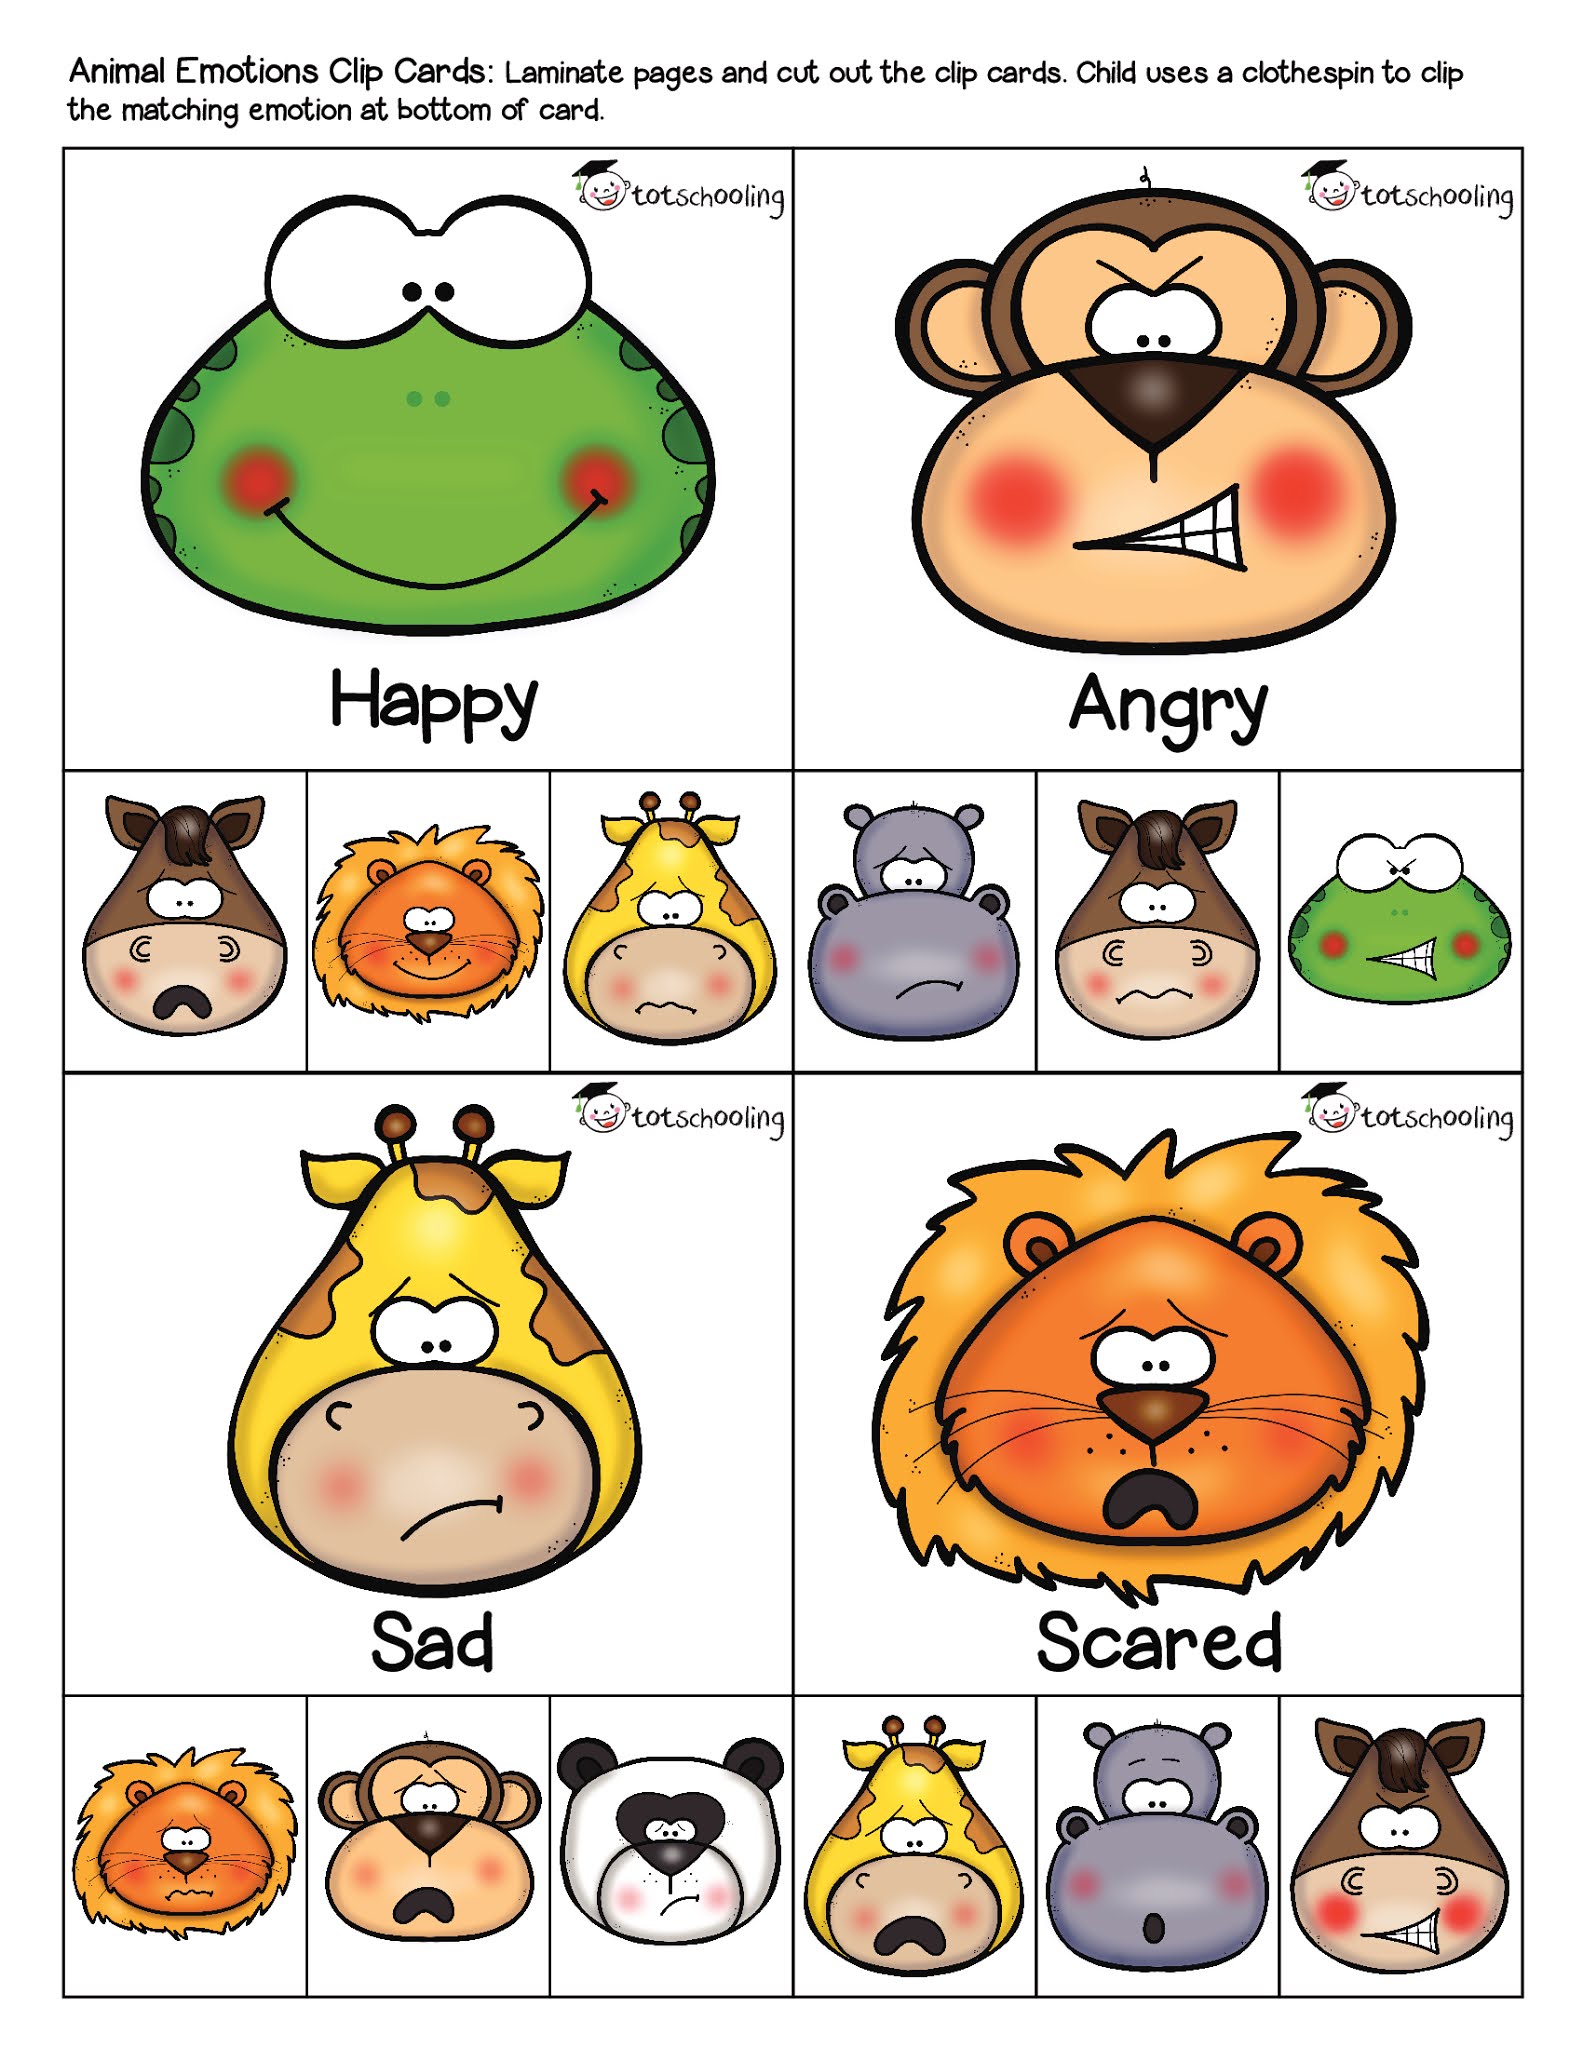 Animals emotions. Карточки эмоции животных. Эмоции животных в рисунках. Животные с эмоциями для детей. Emotions карточки для детей.